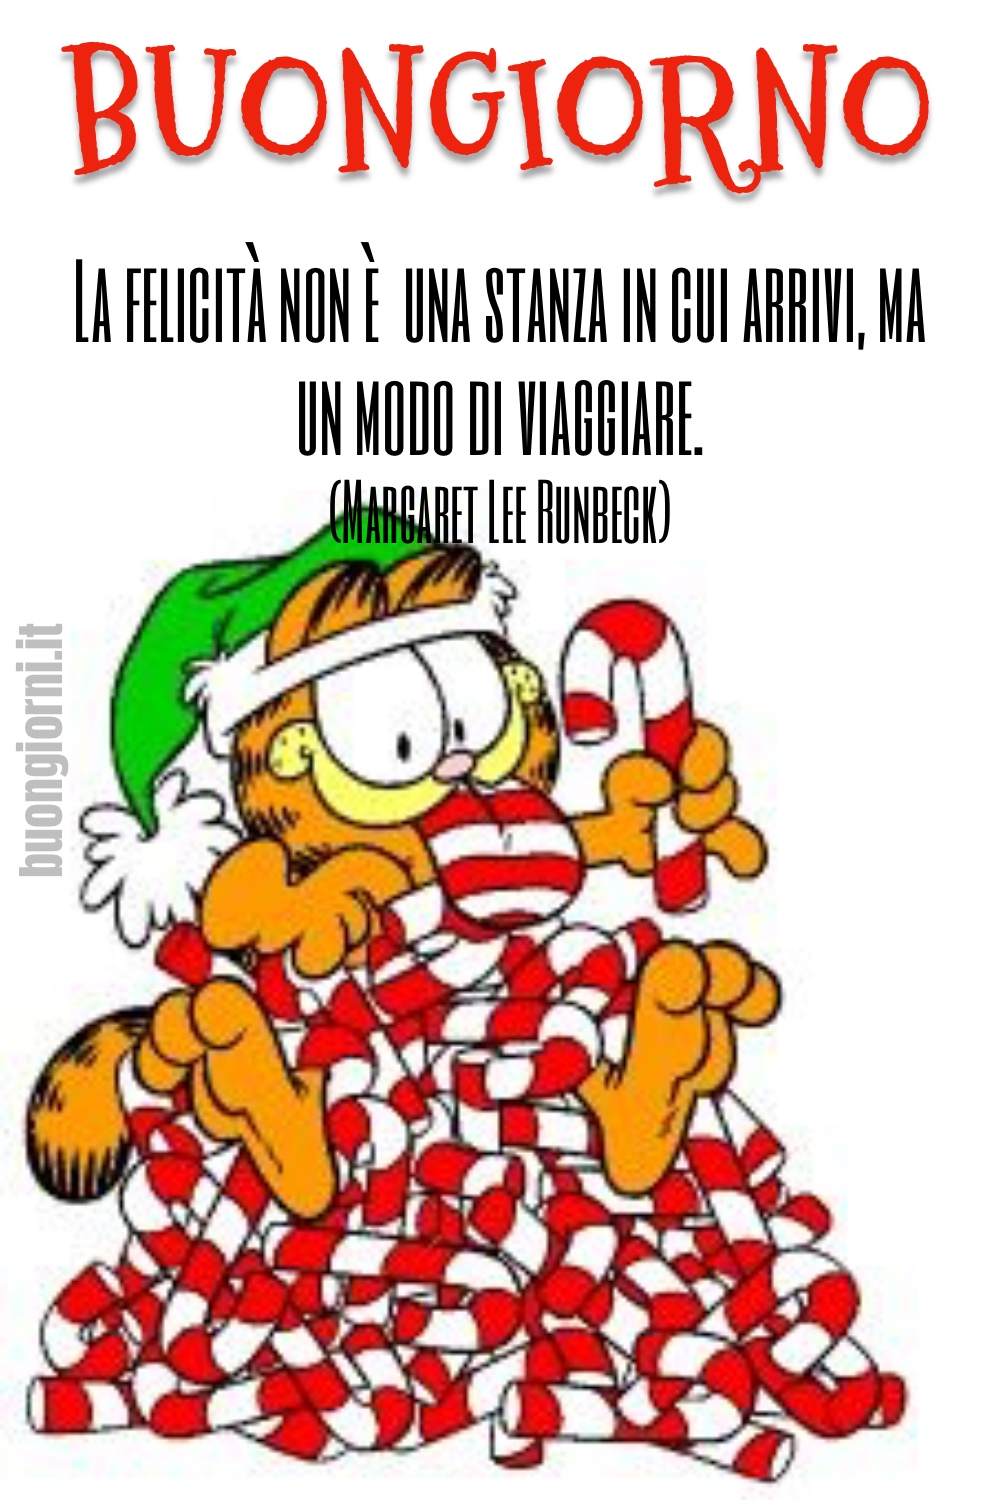 immagini nuove di buongiorno natalizio con Garfield